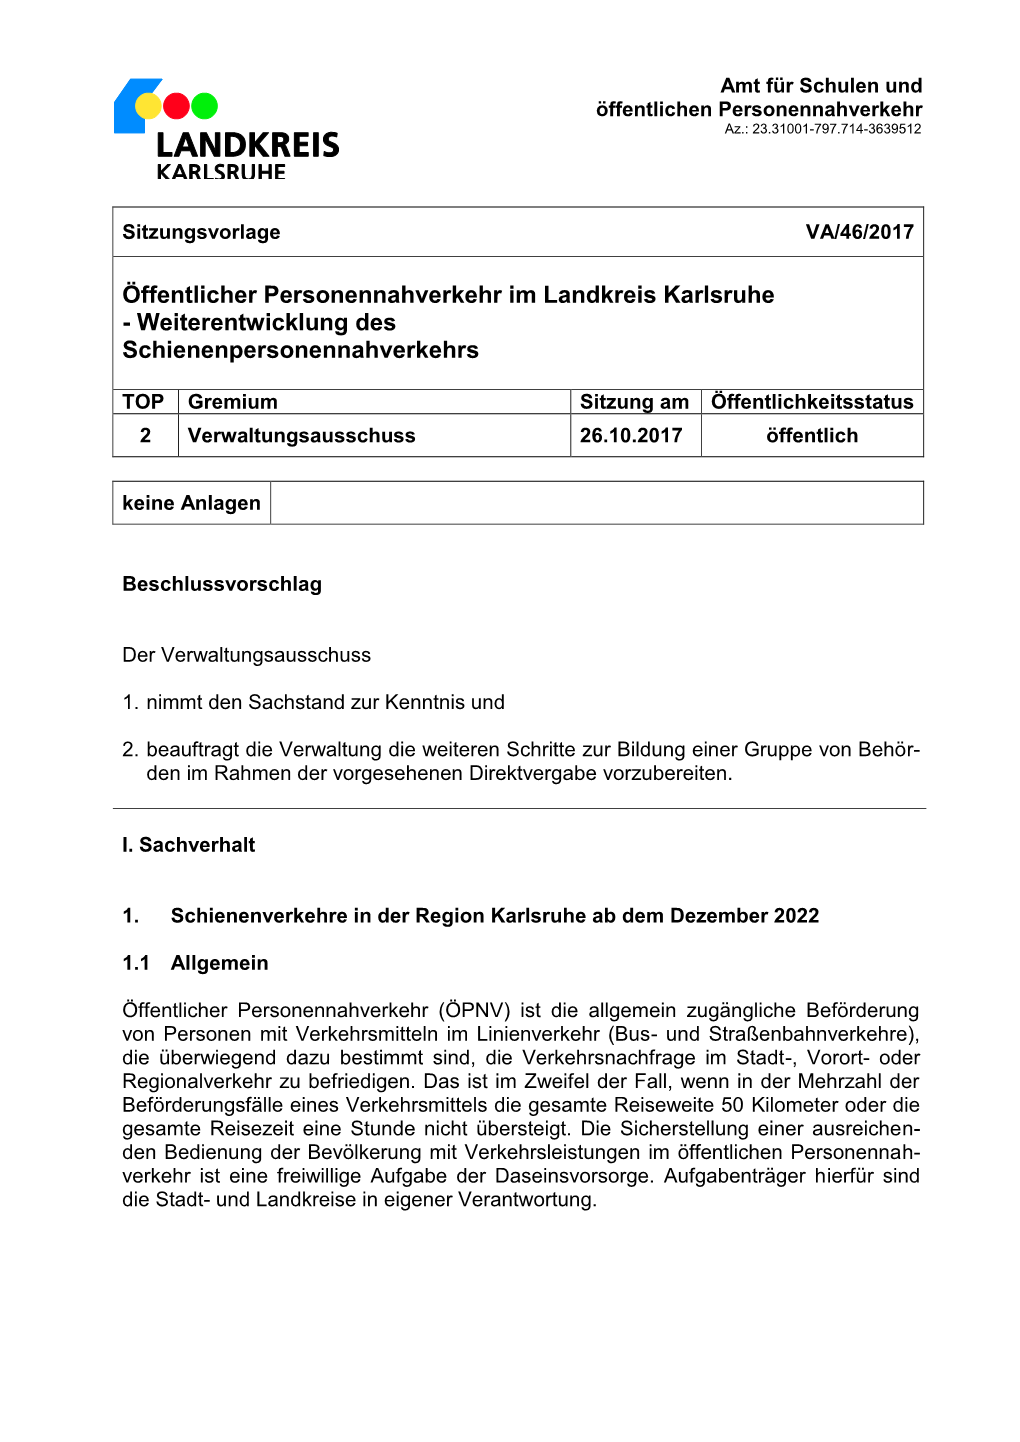 Öffentlicher Personennahverkehr Im Landkreis Karlsruhe - Weiterentwicklung Des Schienenpersonennahverkehrs